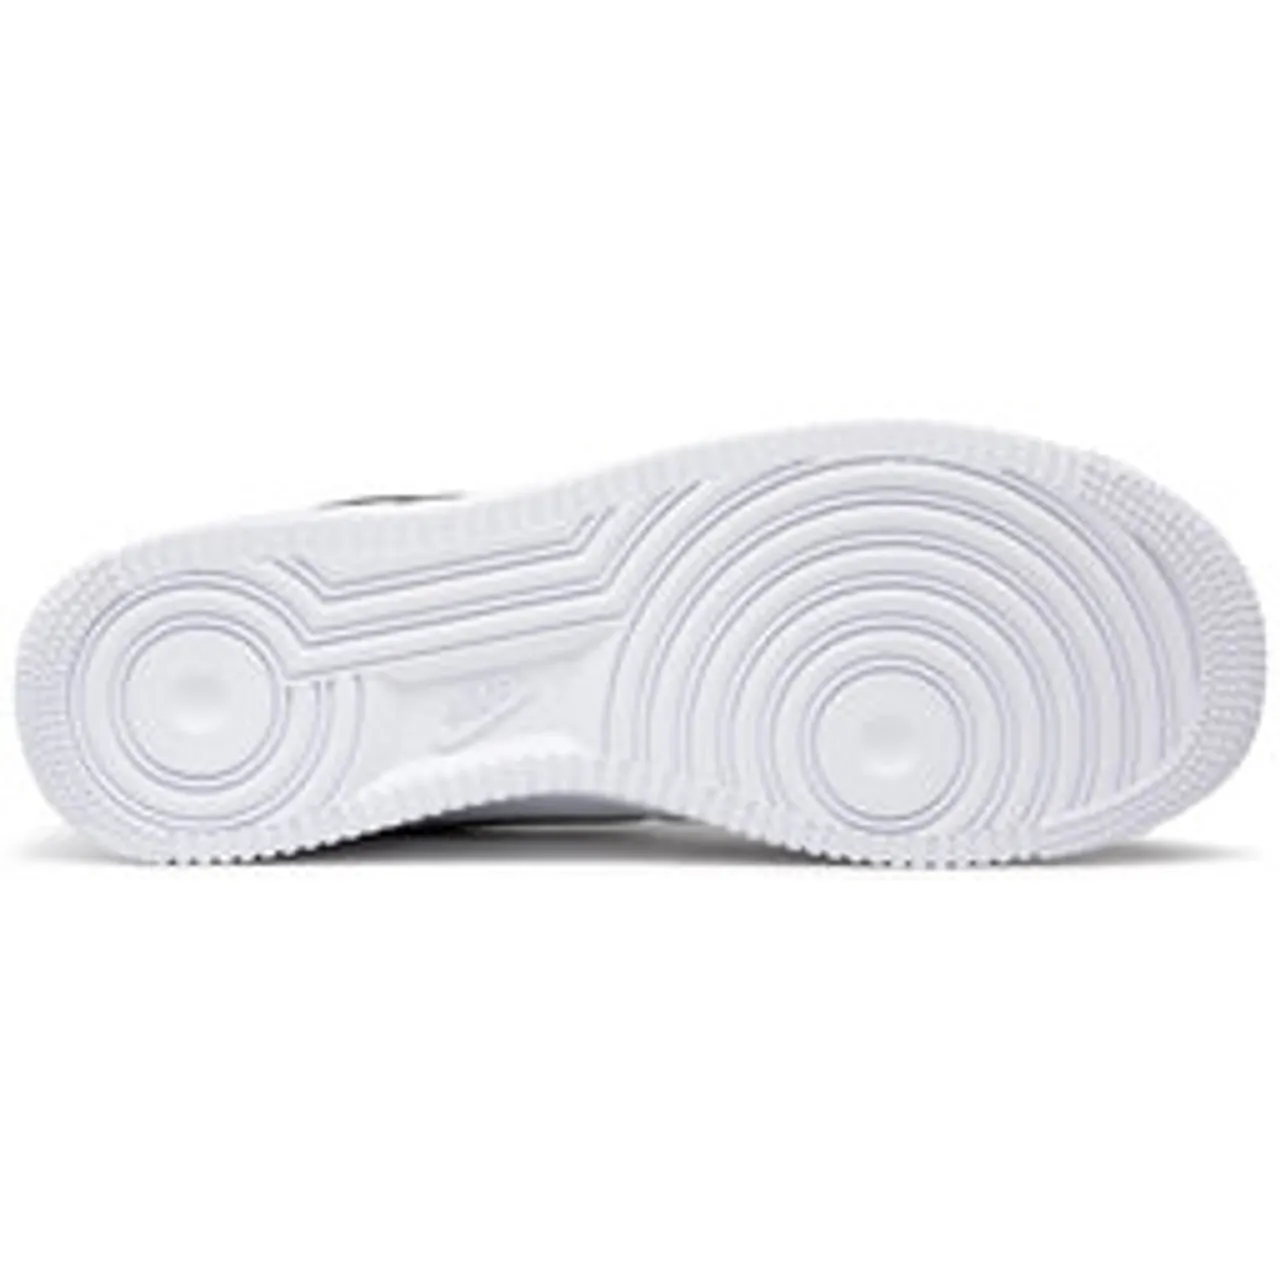 Sneakers Nike Air Force 1 '07 CT2302 100 Weiß